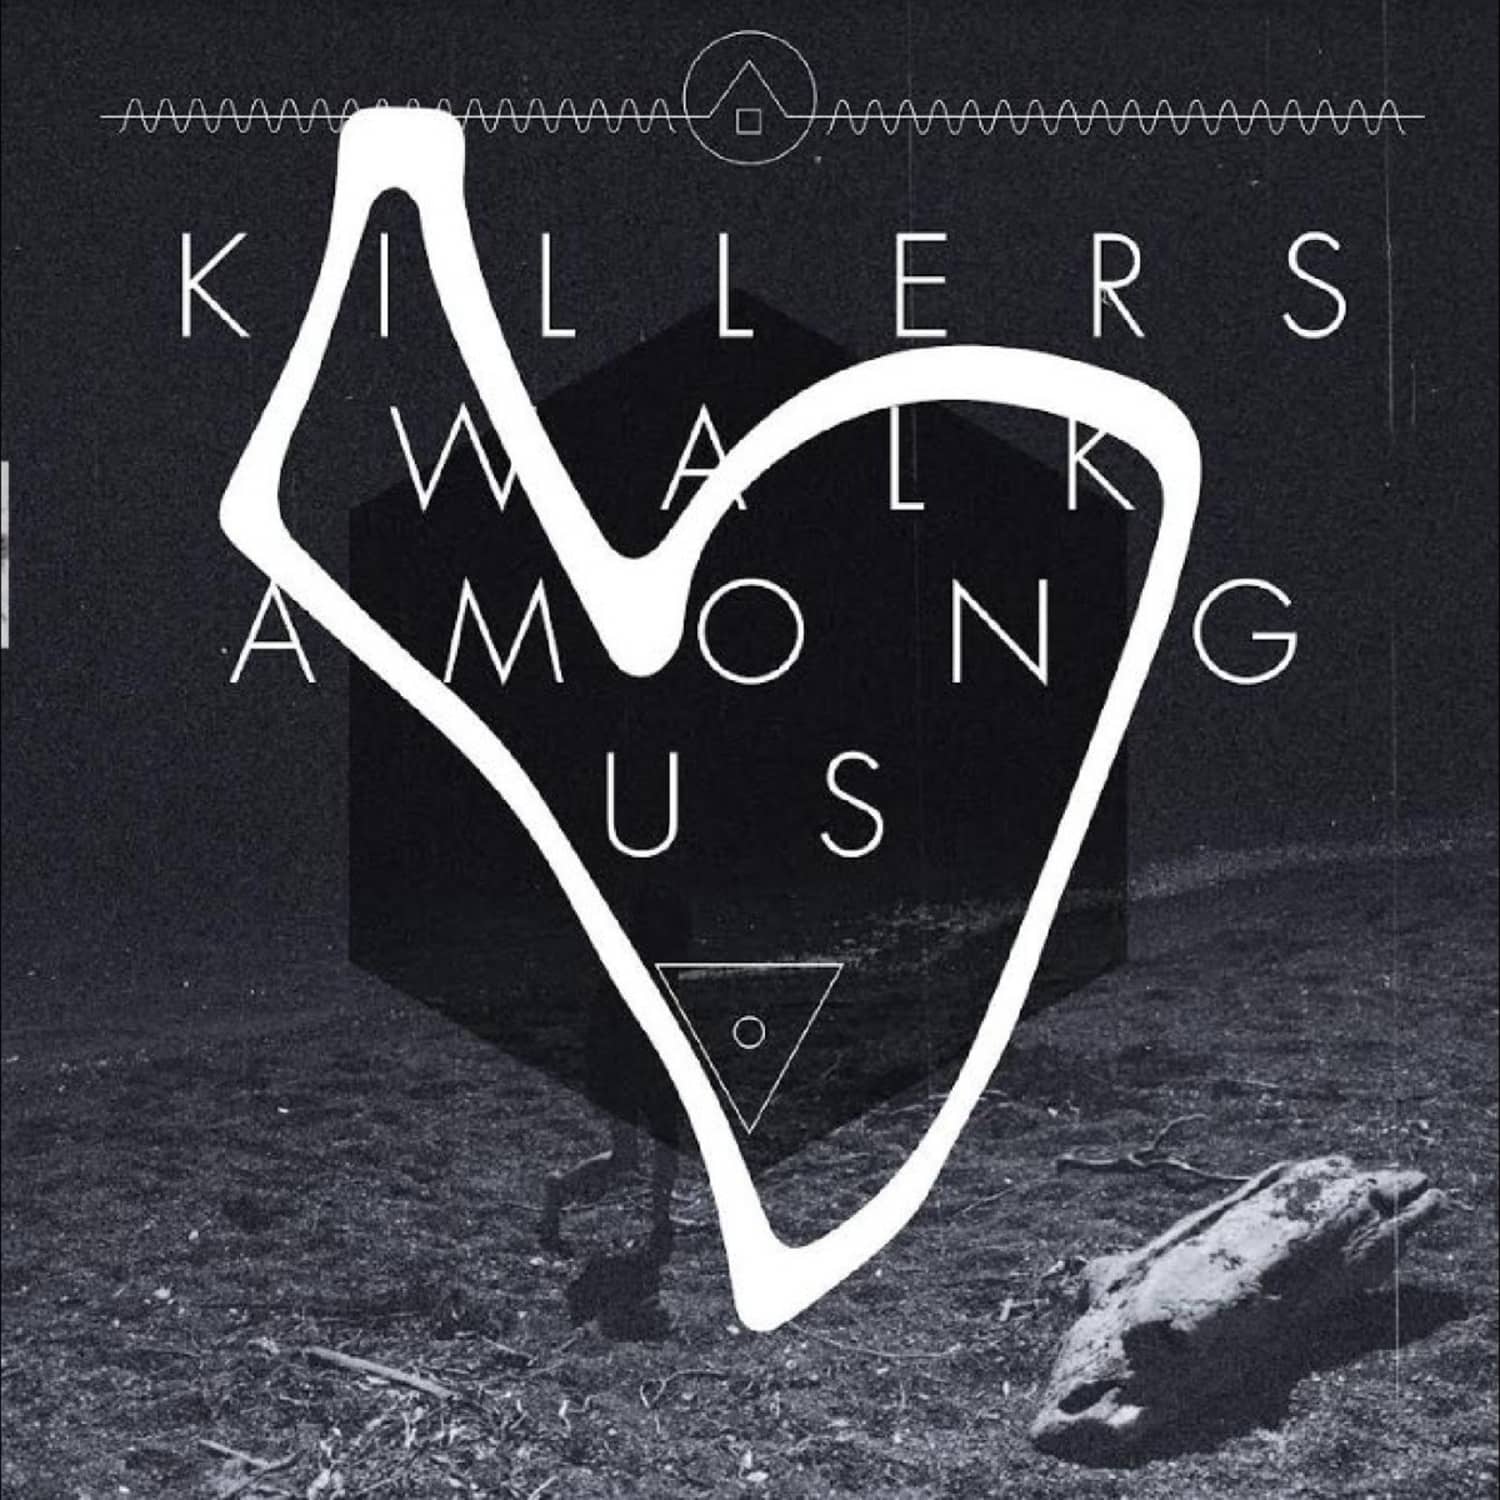 Killers Walk Among Us - KILLERS WALK AMONG US 